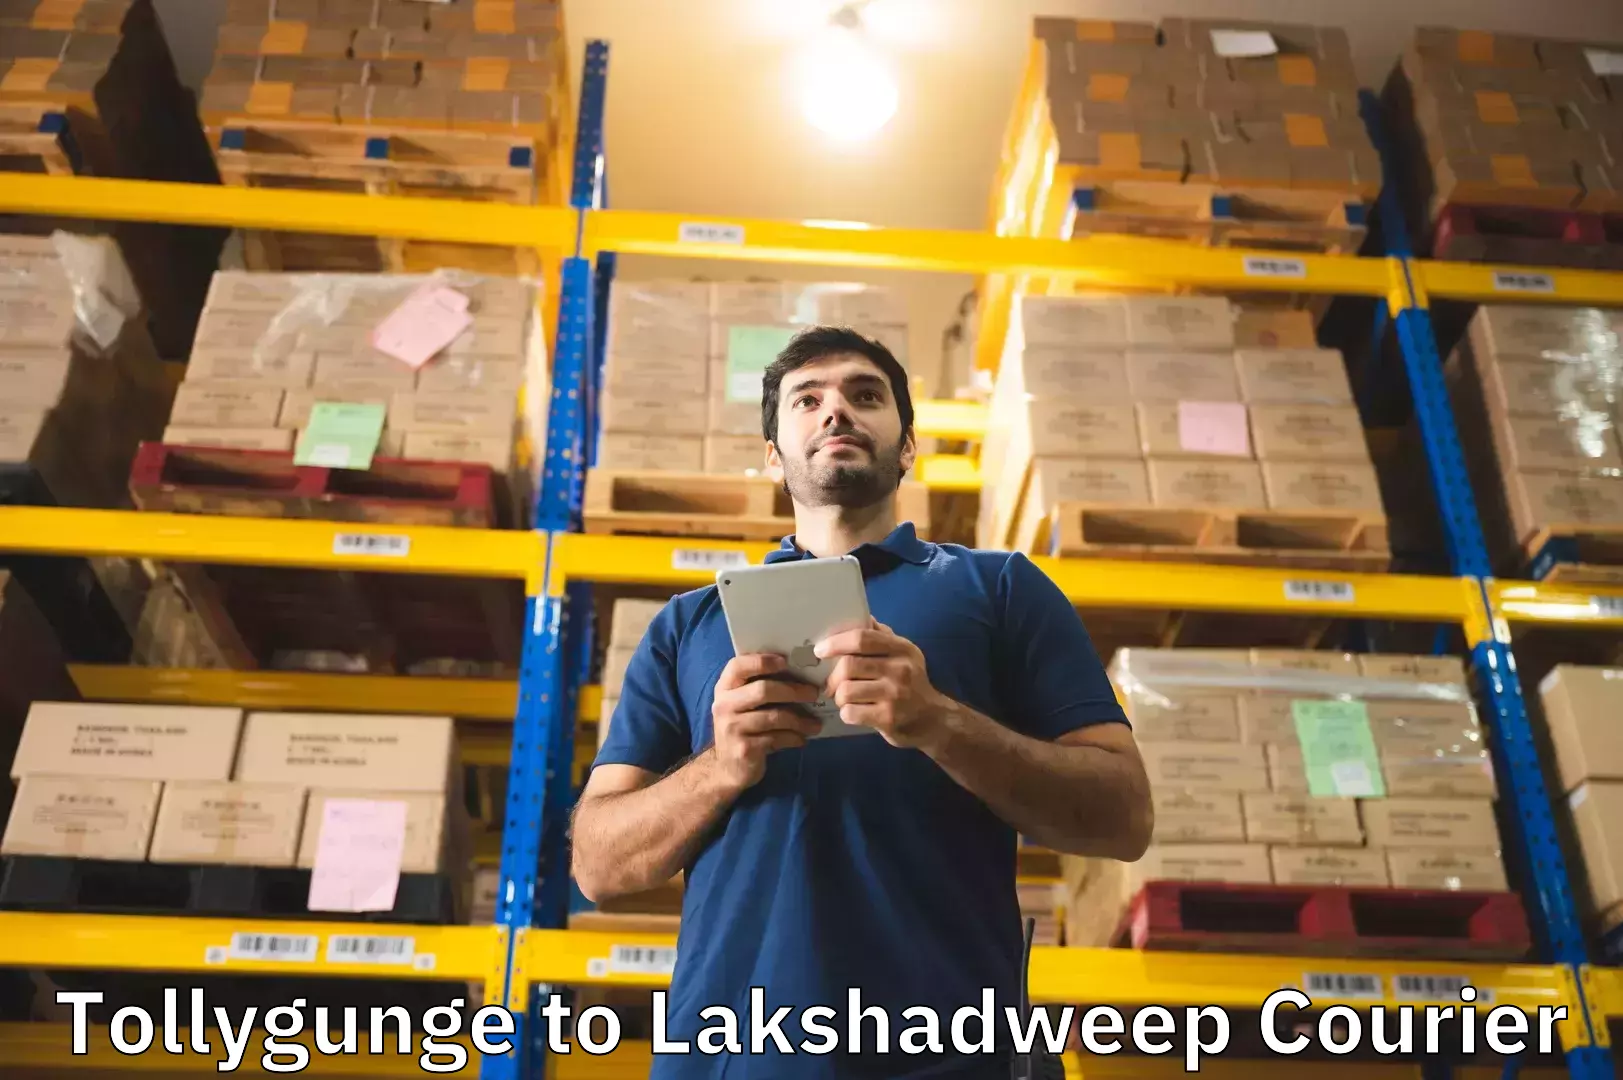 Luggage delivery app Tollygunge to Lakshadweep